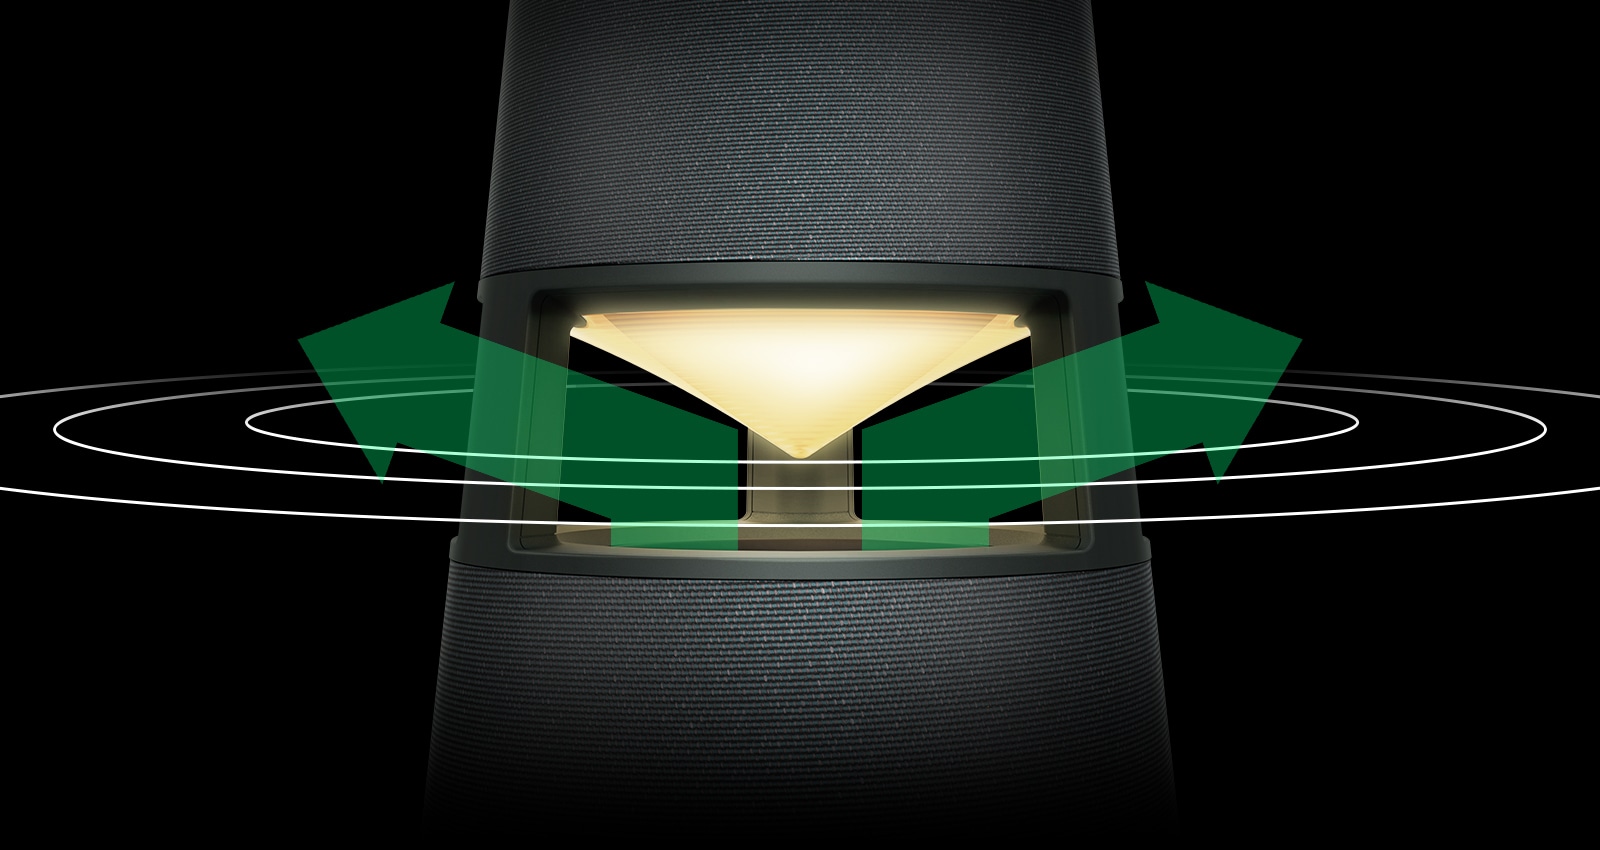 Pilt kollaselt valgustatud XBOOM 360-st, millel on rohelised nooled reflektori vasakul ja paremal küljel ning noole ümber levivad helilained.